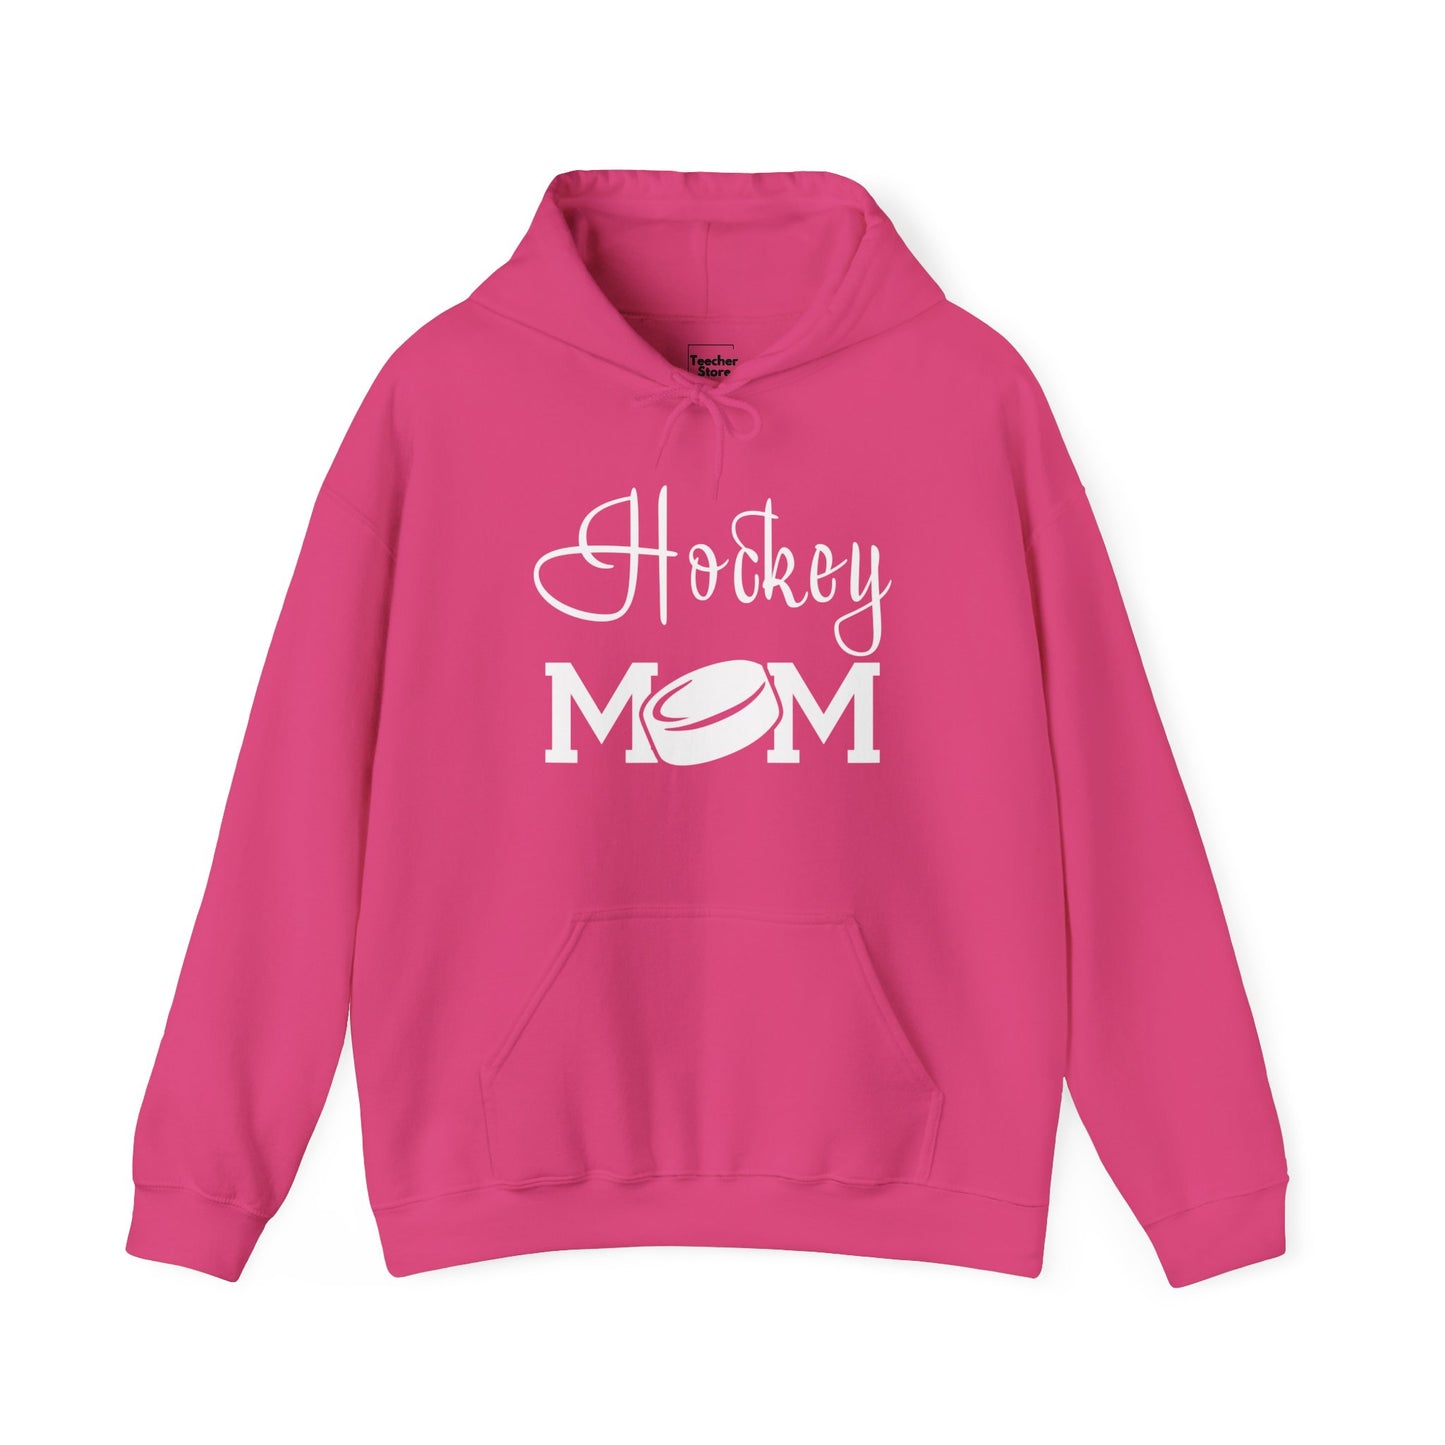 Hockey Mom Puck Hooded Sweatshirt